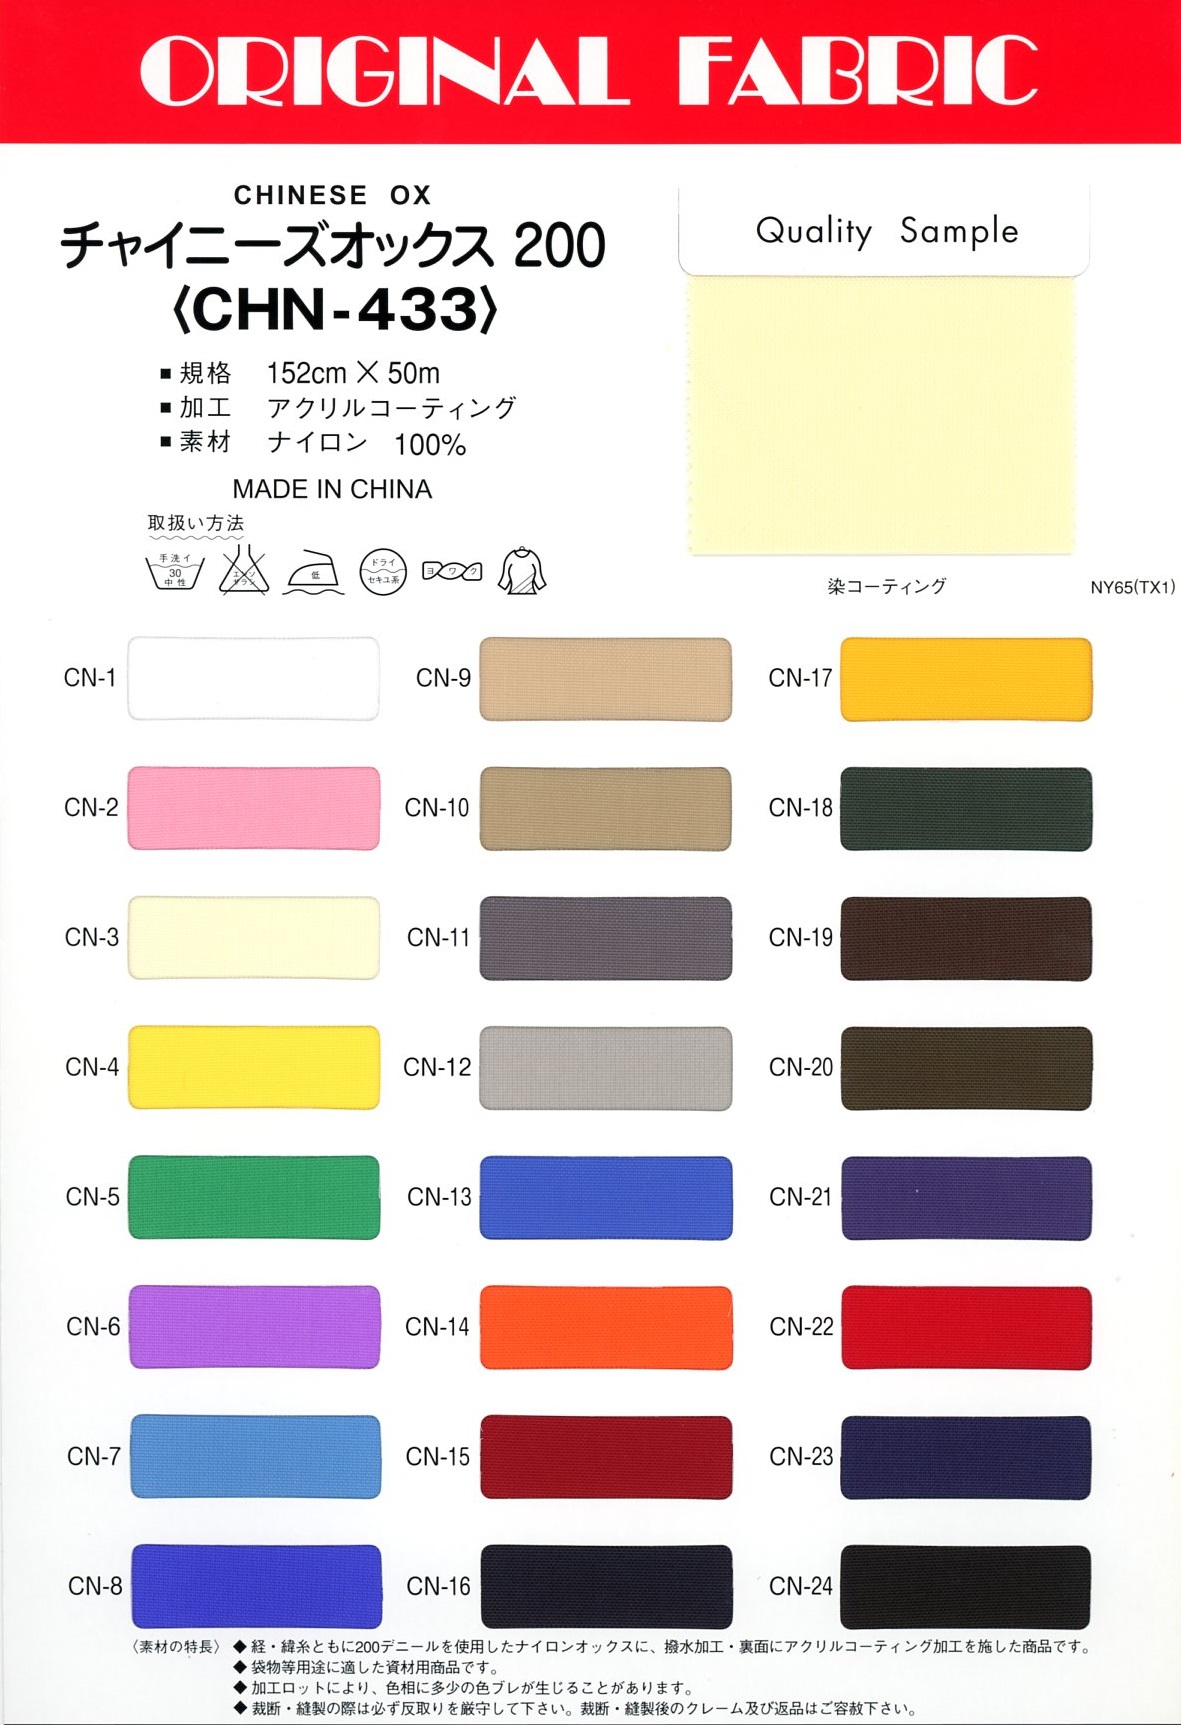 CHN-433 Chinesisches Oxford 200[Textilgewebe] Masuda